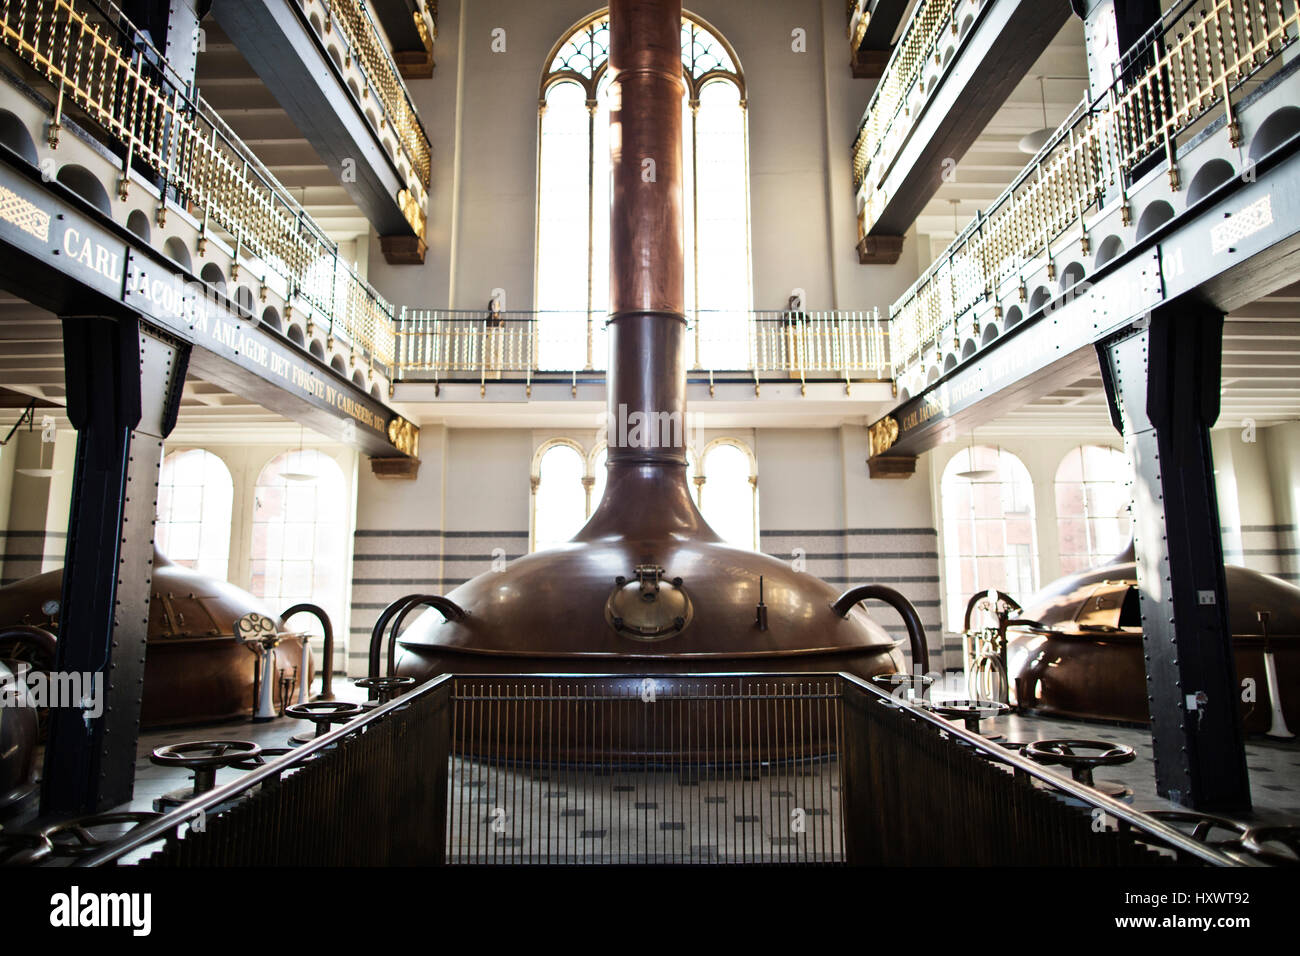 All'interno della vecchia fabbrica di birra Carlsberg a Copenhagen, in Danimarca. La birreria è stata fondata nel 1847 ed è stata convertita in un moderno centro per i visitatori. Foto Stock